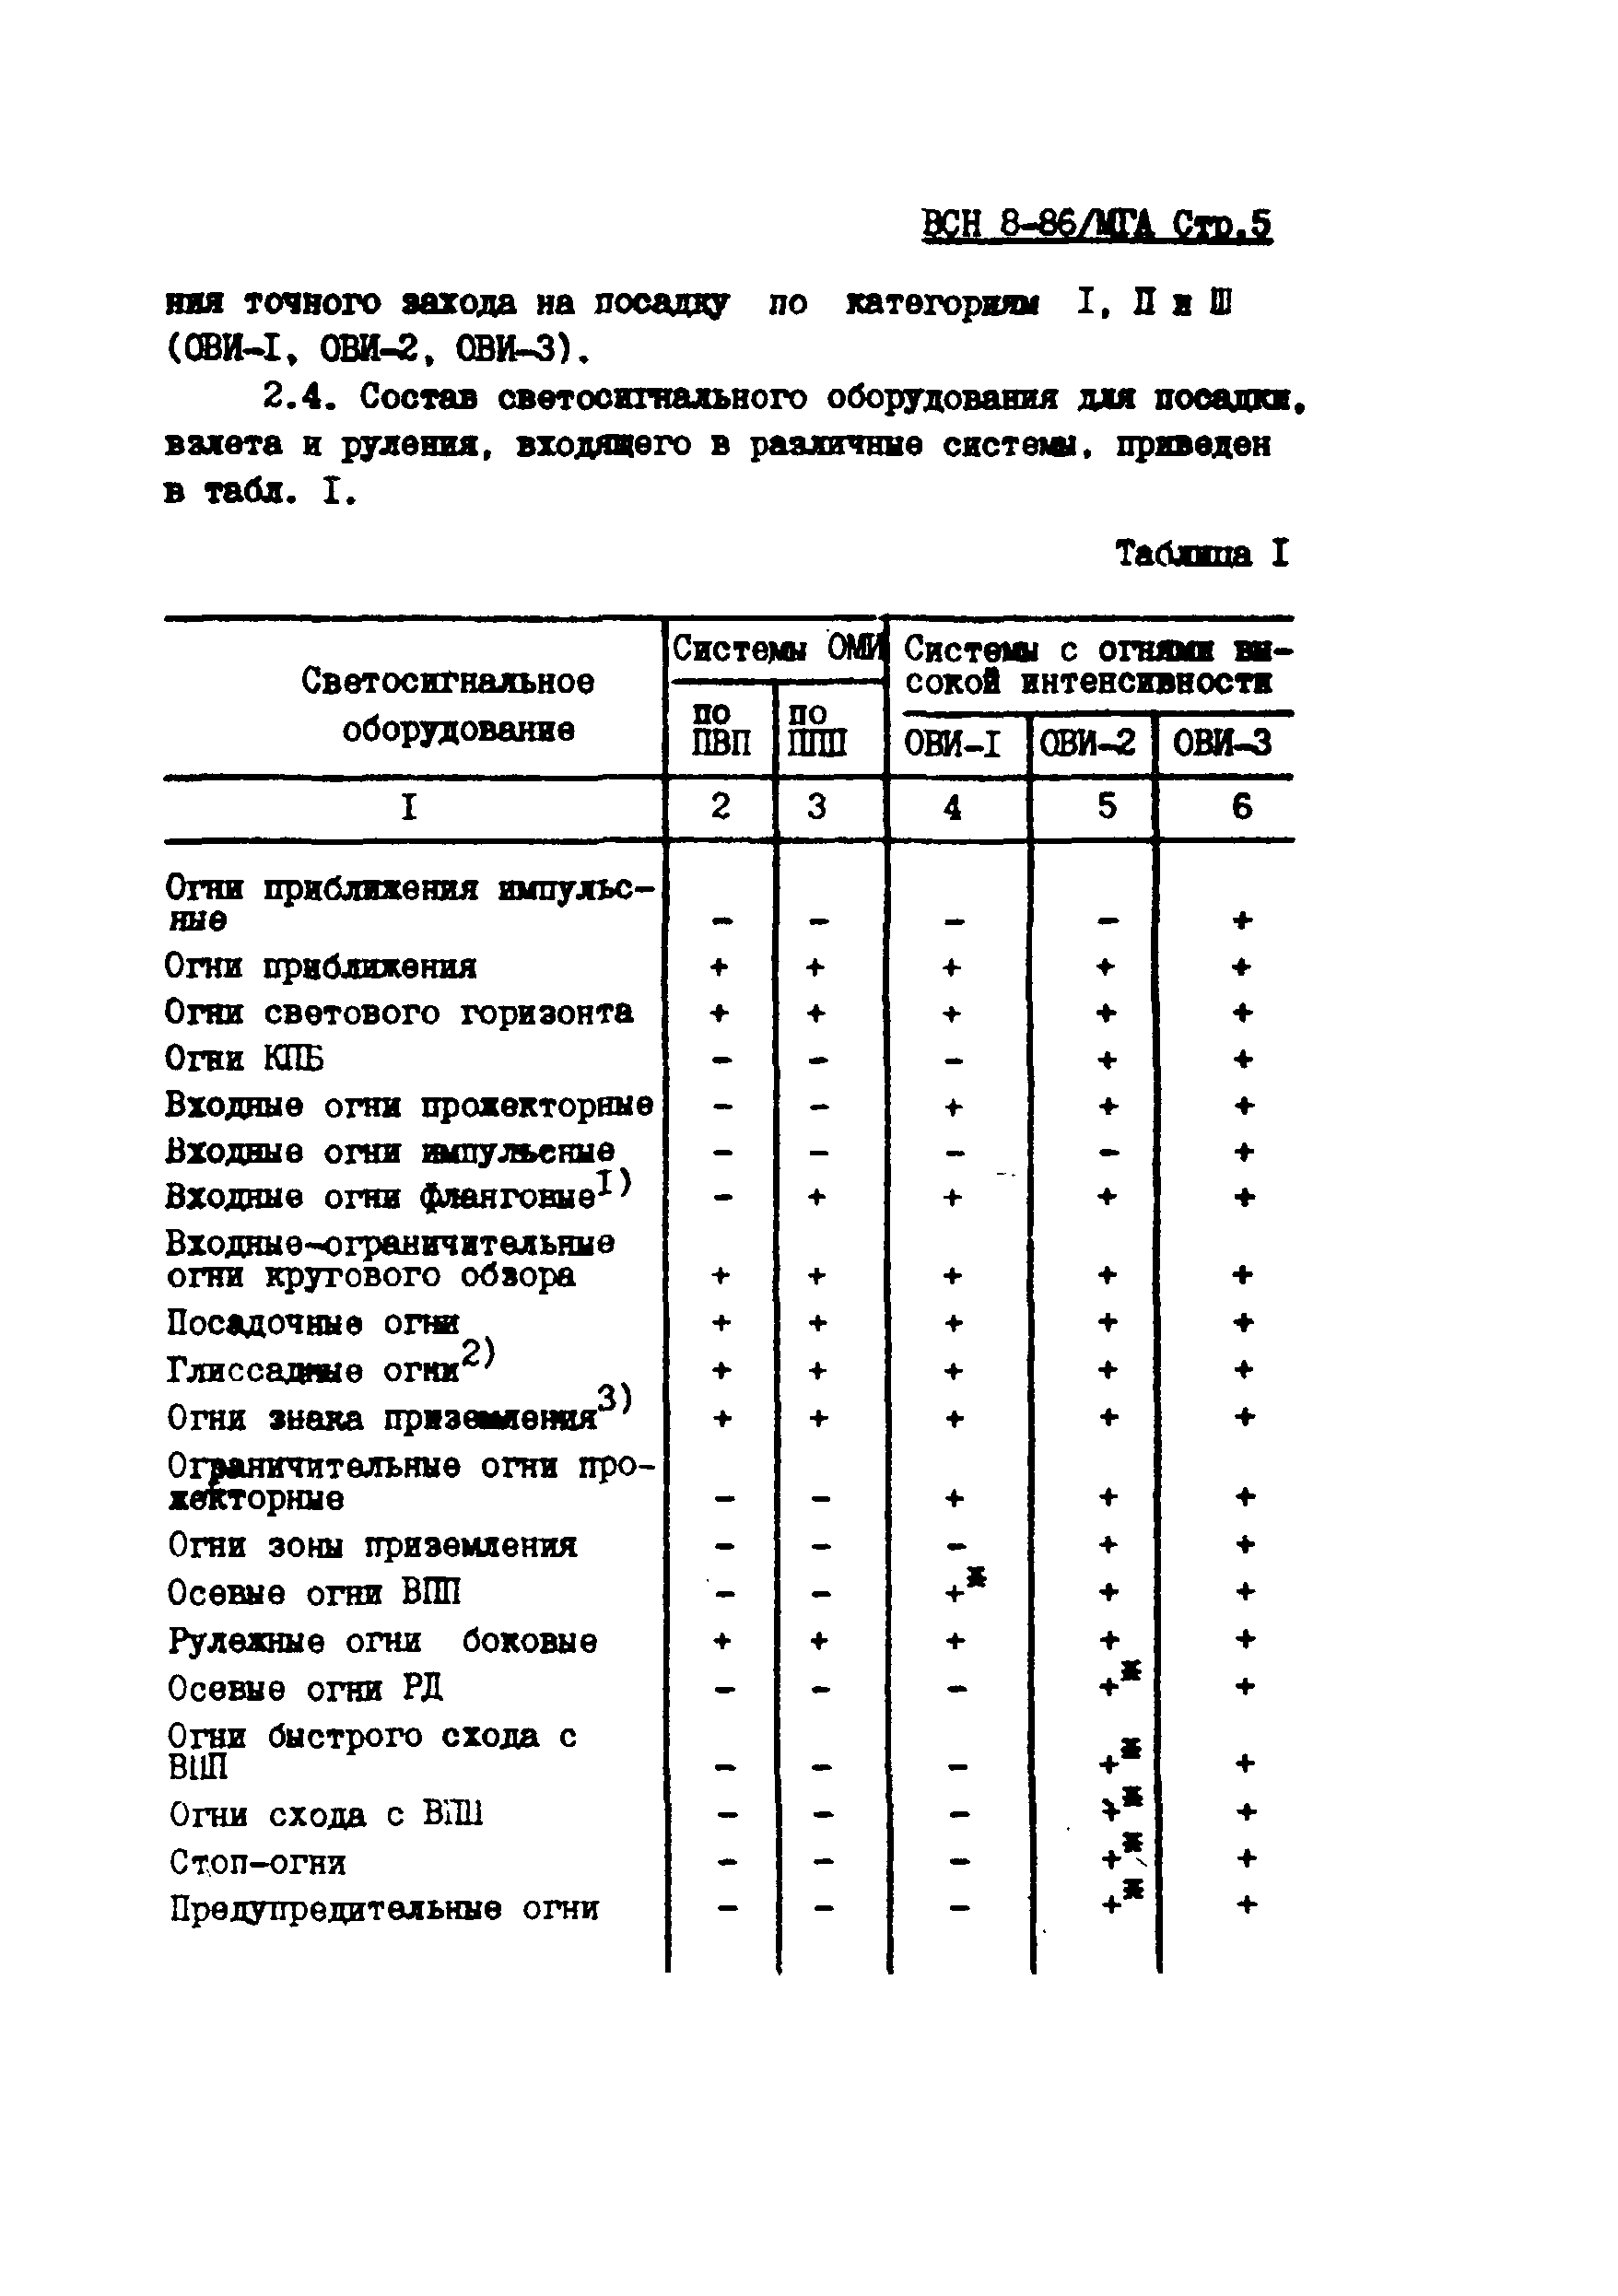 ВСН 8-86